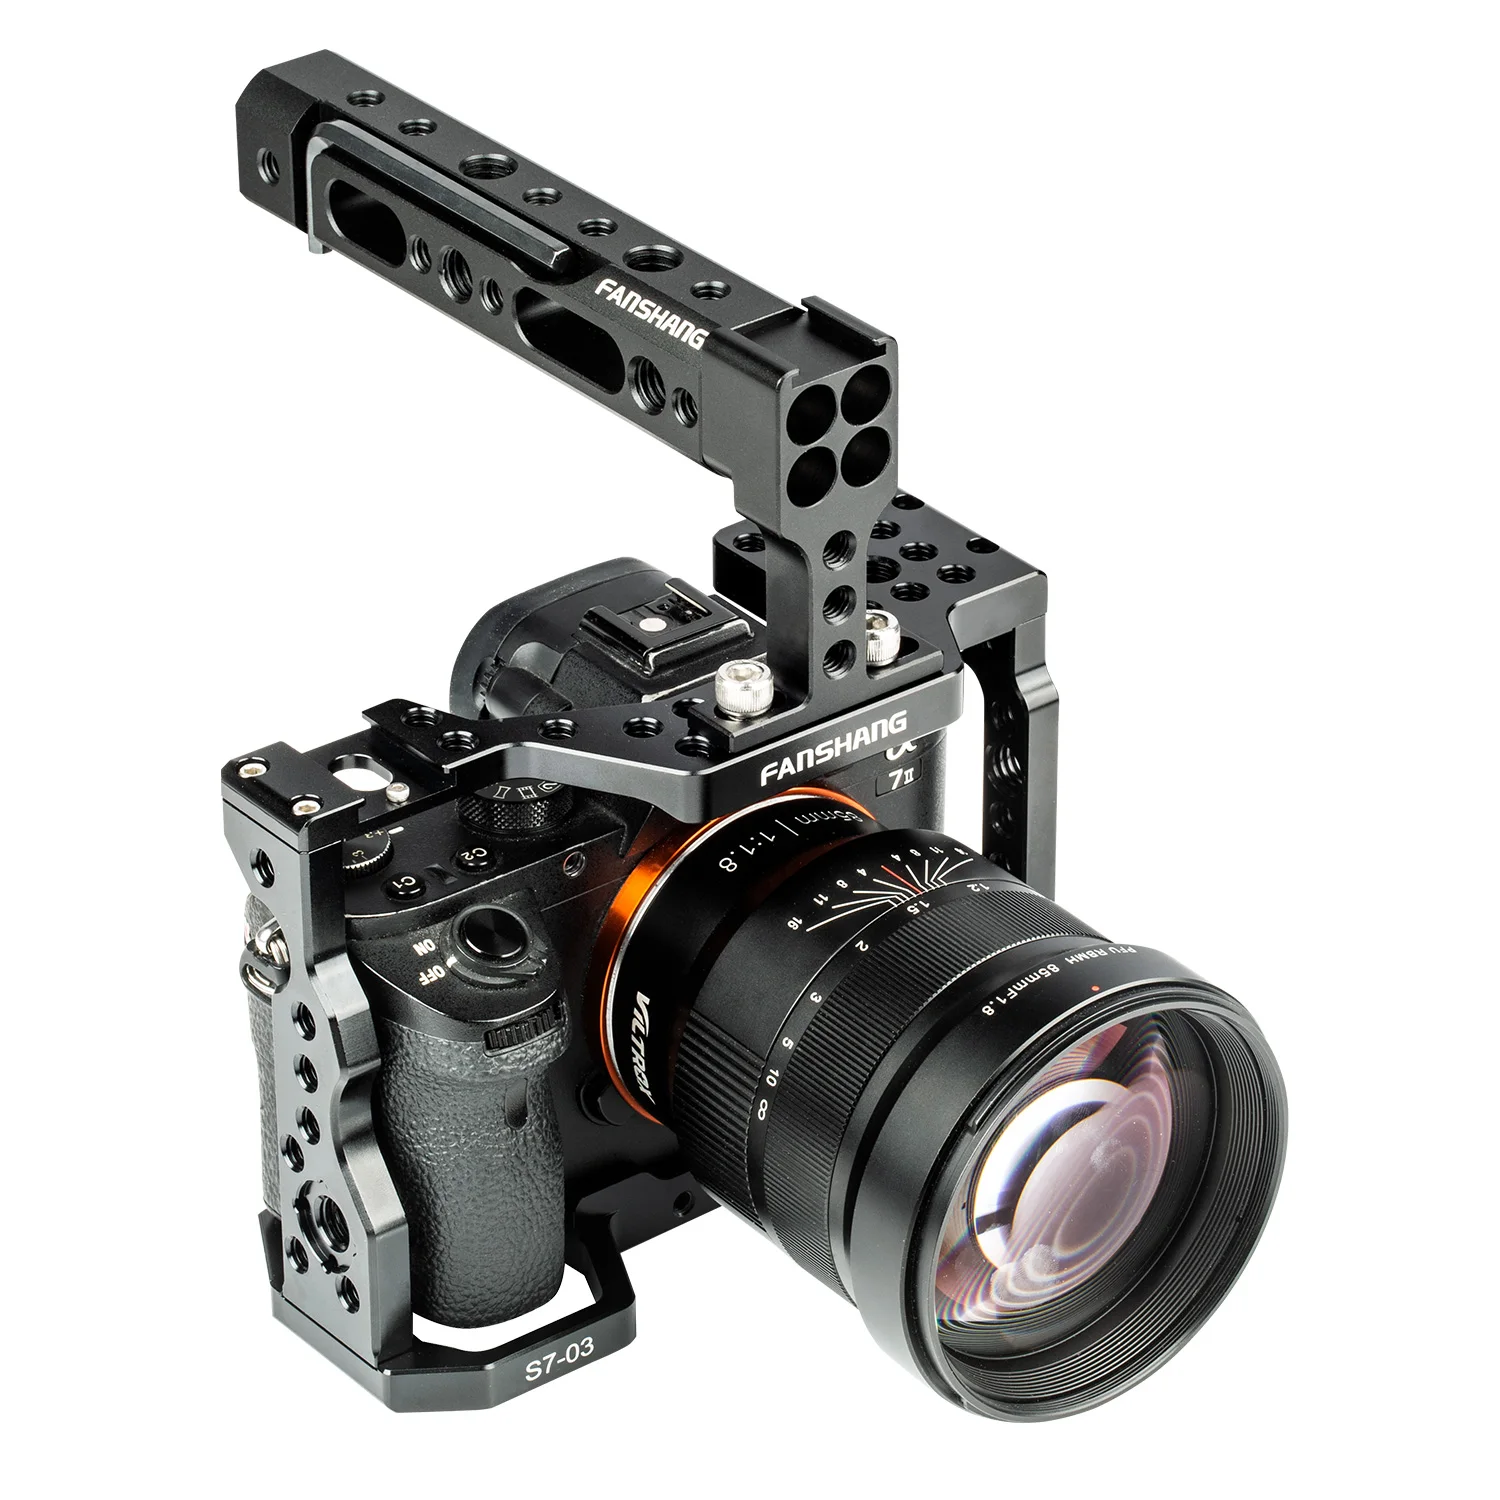 Алюминиевая клетка для камеры комплект Риг видео стабилизатор+ верхняя ручка+ непрерывный фокус+ материя коробка для sony A7RIII A7III A7II A7RII A7SII A7 DSLR